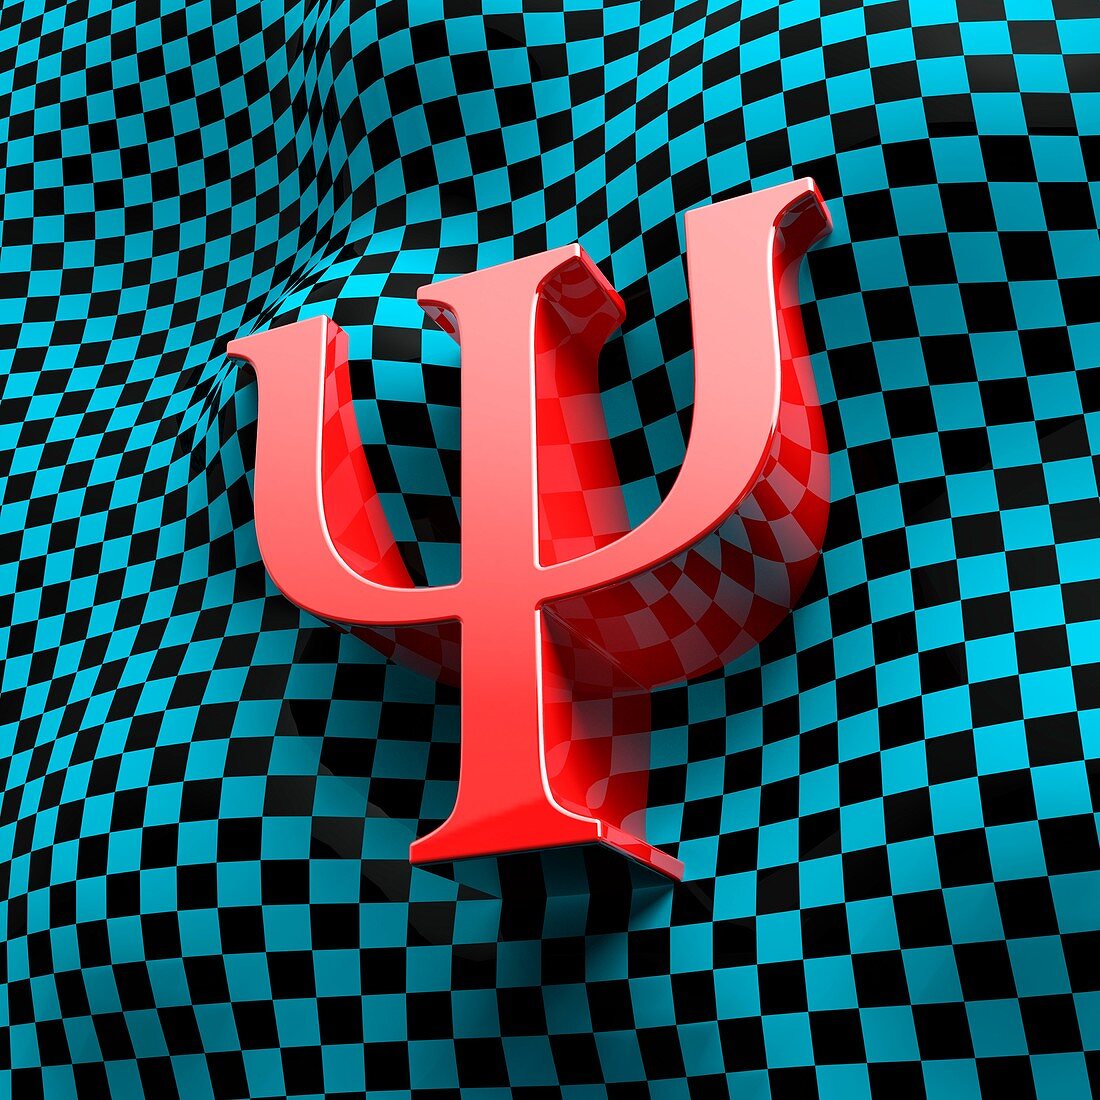 Wave function letter psi, illustration